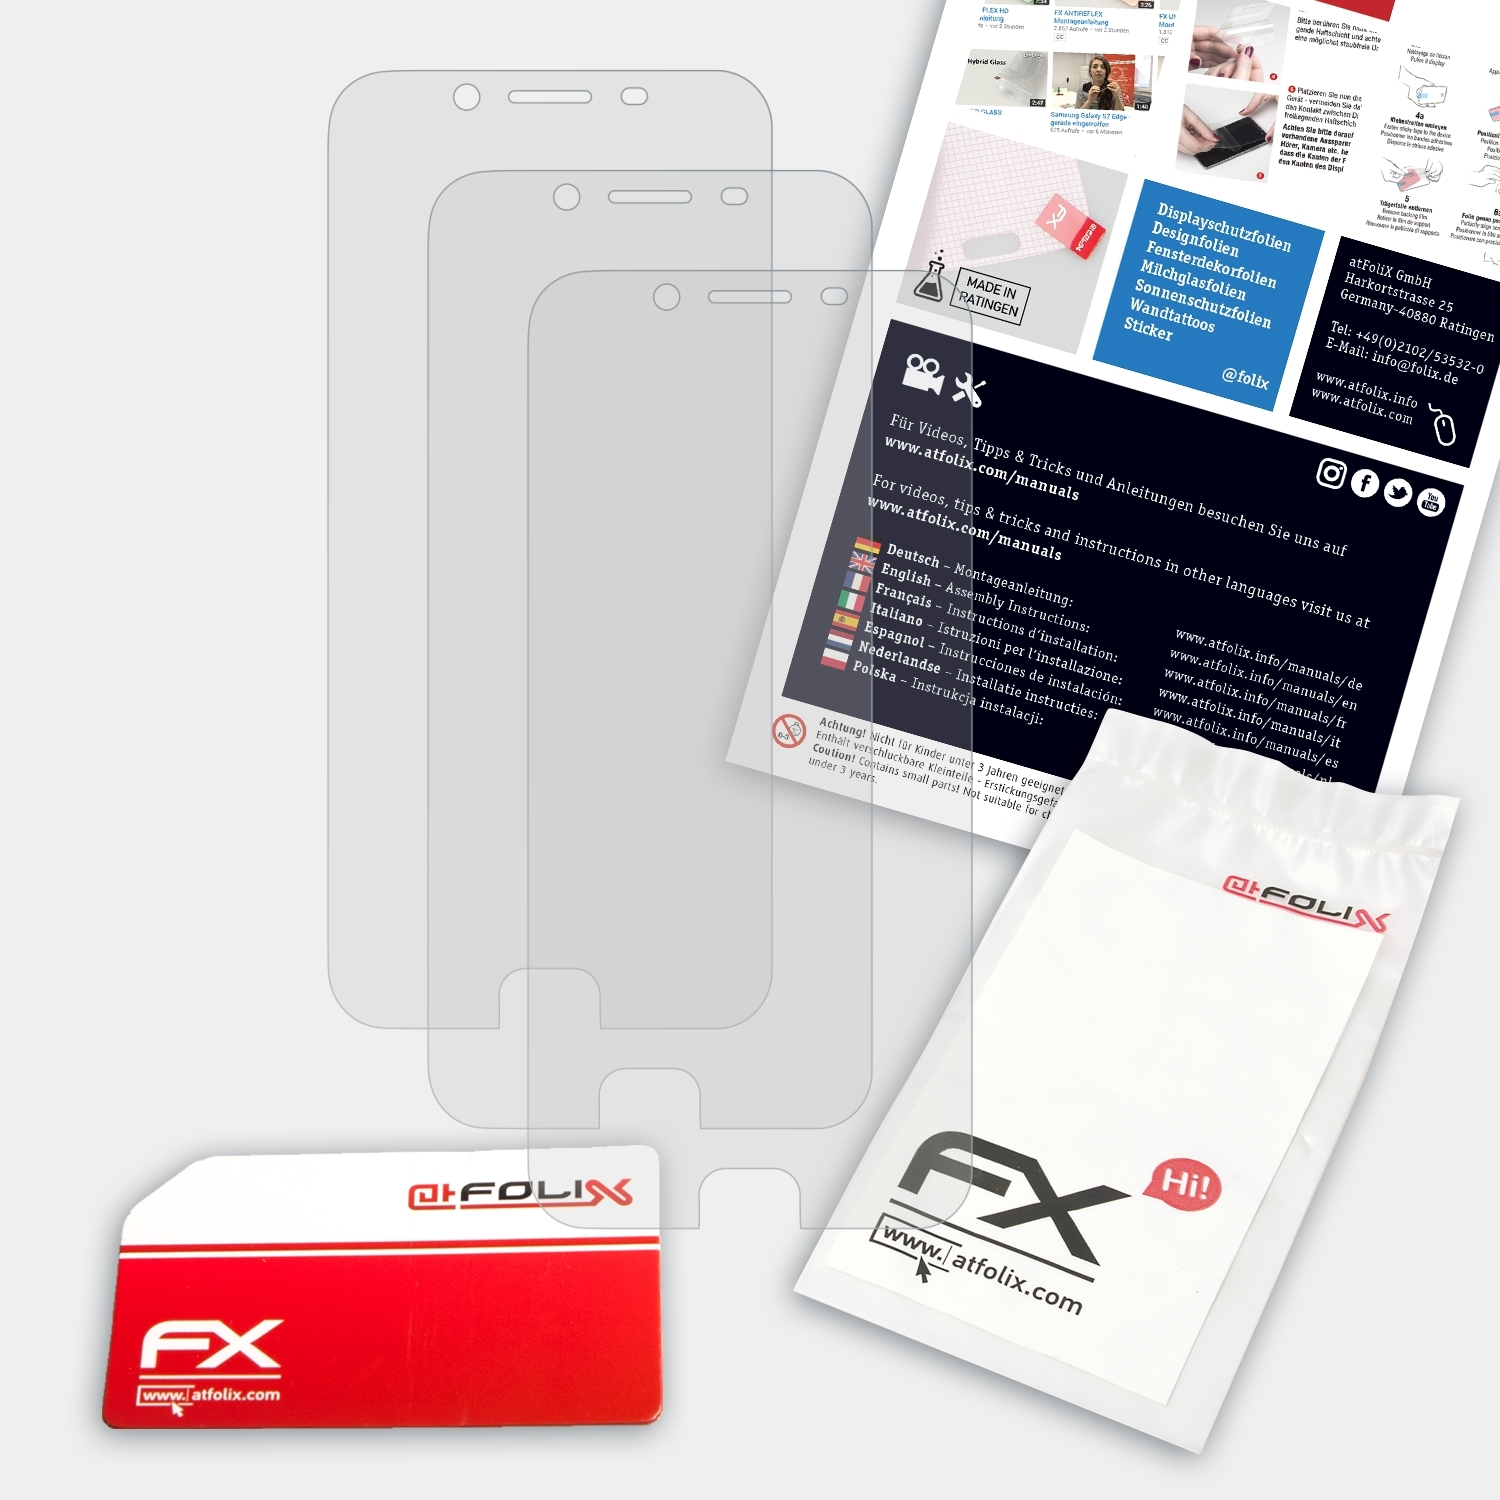 ATFOLIX 3x FX-Antireflex Displayschutz(für R9s) Oppo